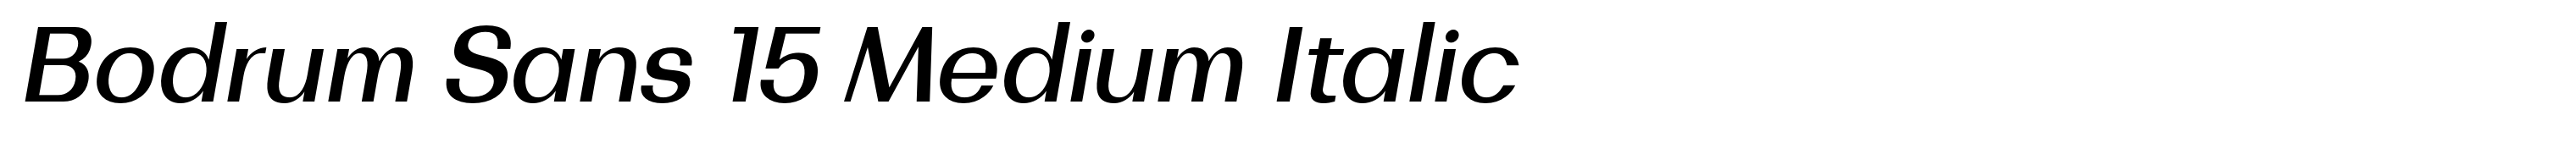 Bodrum Sans 15 Medium Italic